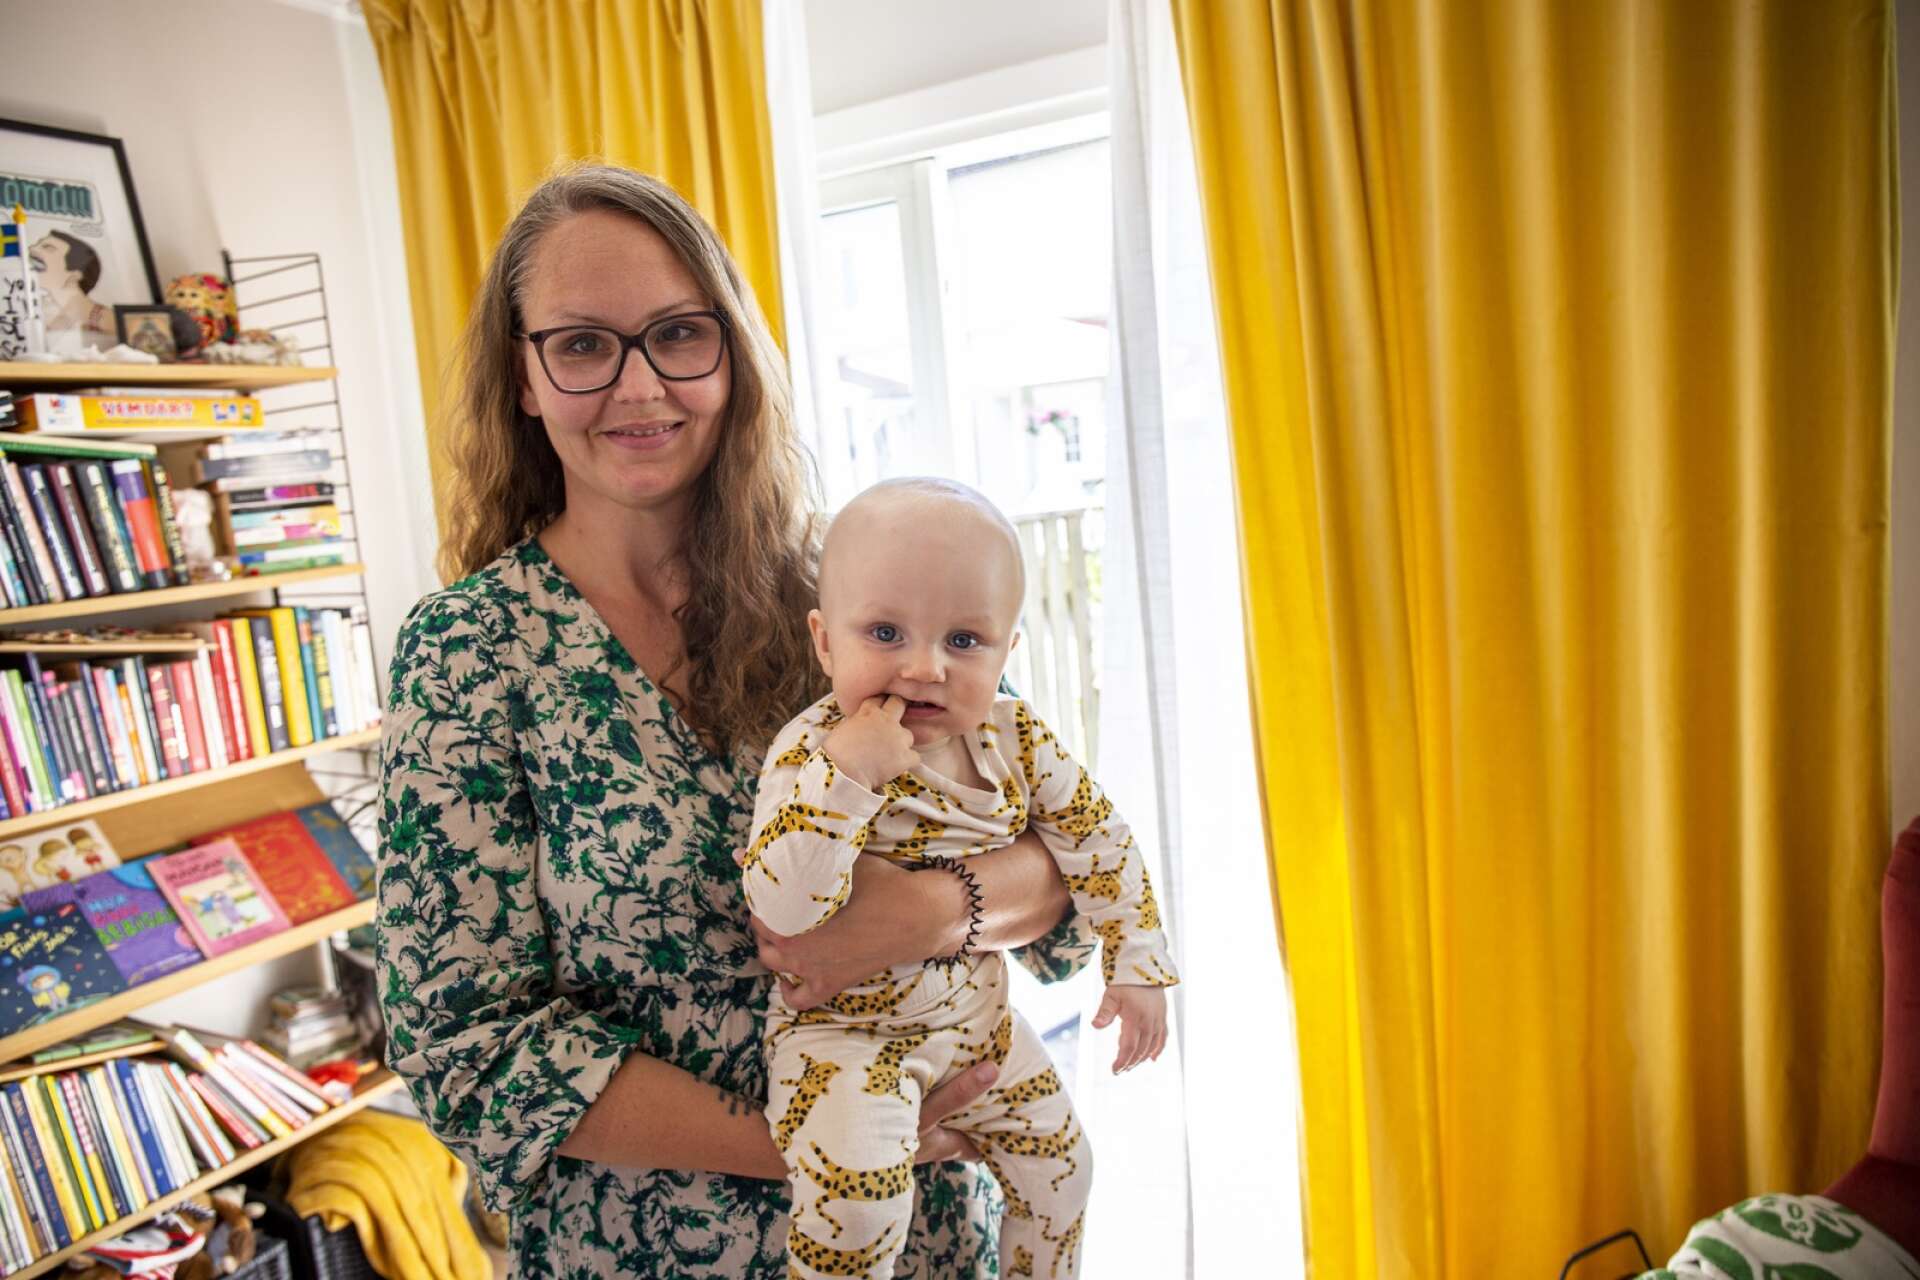 Åmålsbon Elin Ahonen Johansson, 38 år, har gått sin egen väg. När hon inte träffade rätt partner skaffade hon barn med hjälp av donator, och i augusti förra året kom sonen Bobbo till världen.